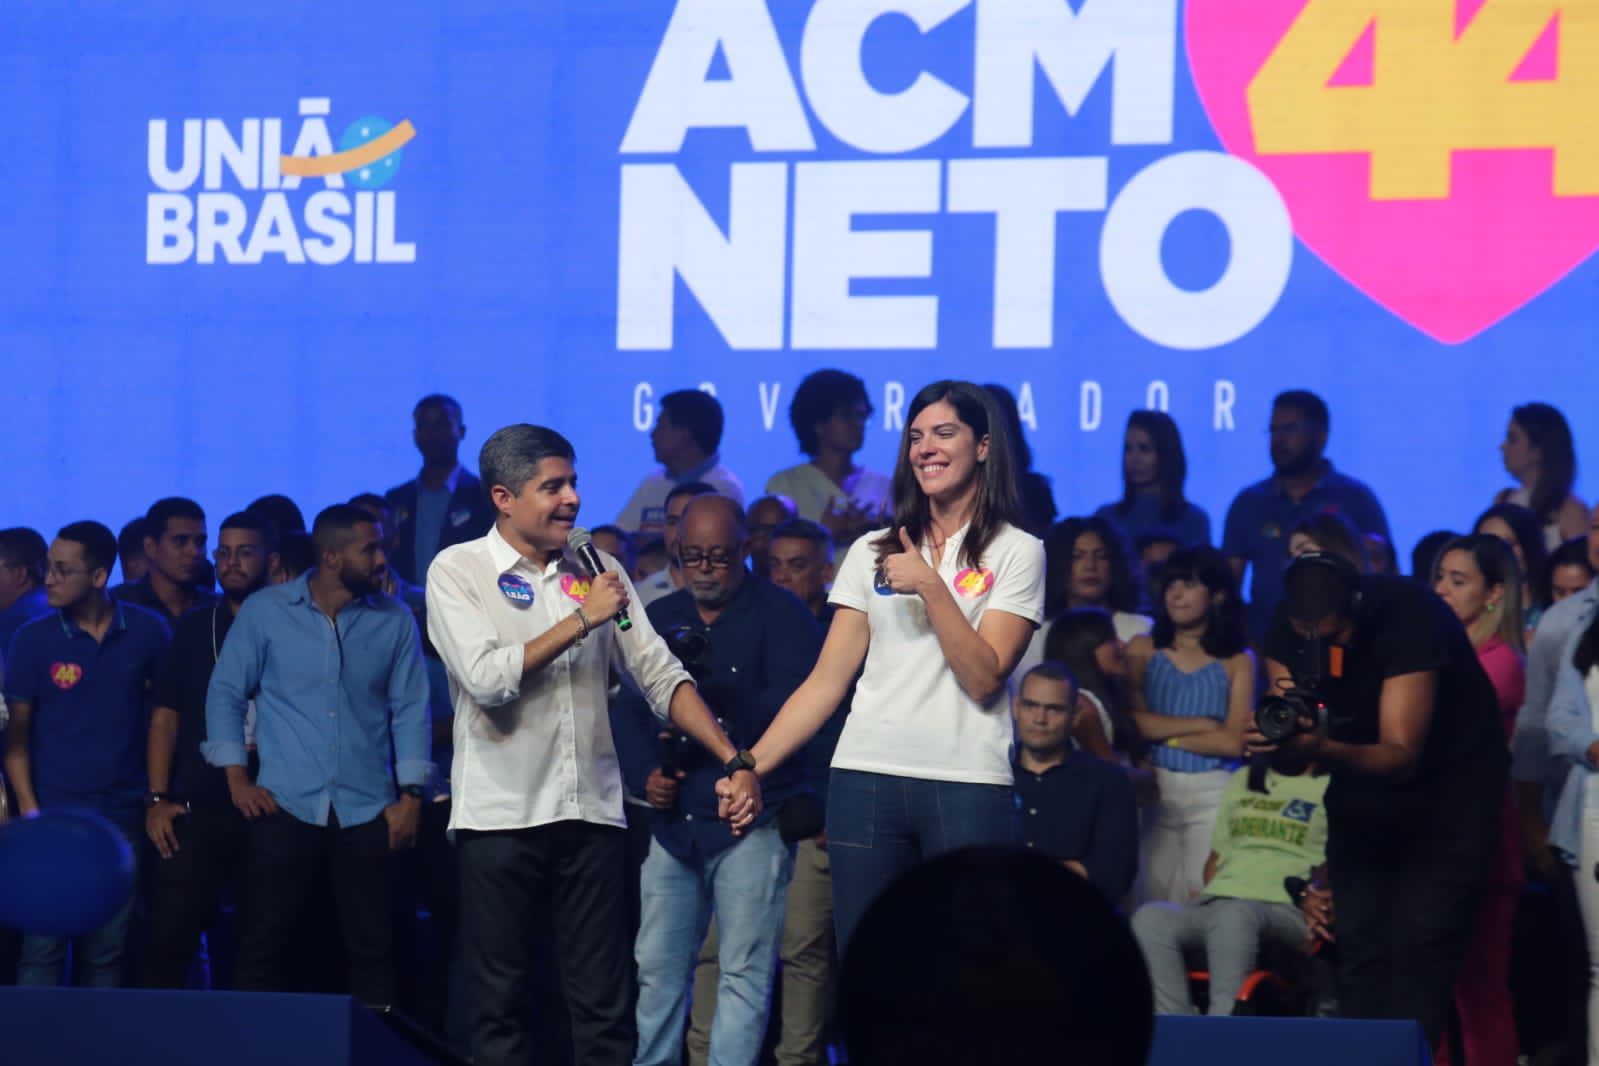 União Brasil oficializa ACM Neto como candidato ao Governo da Bahia em coligação que conta com 13 partidos